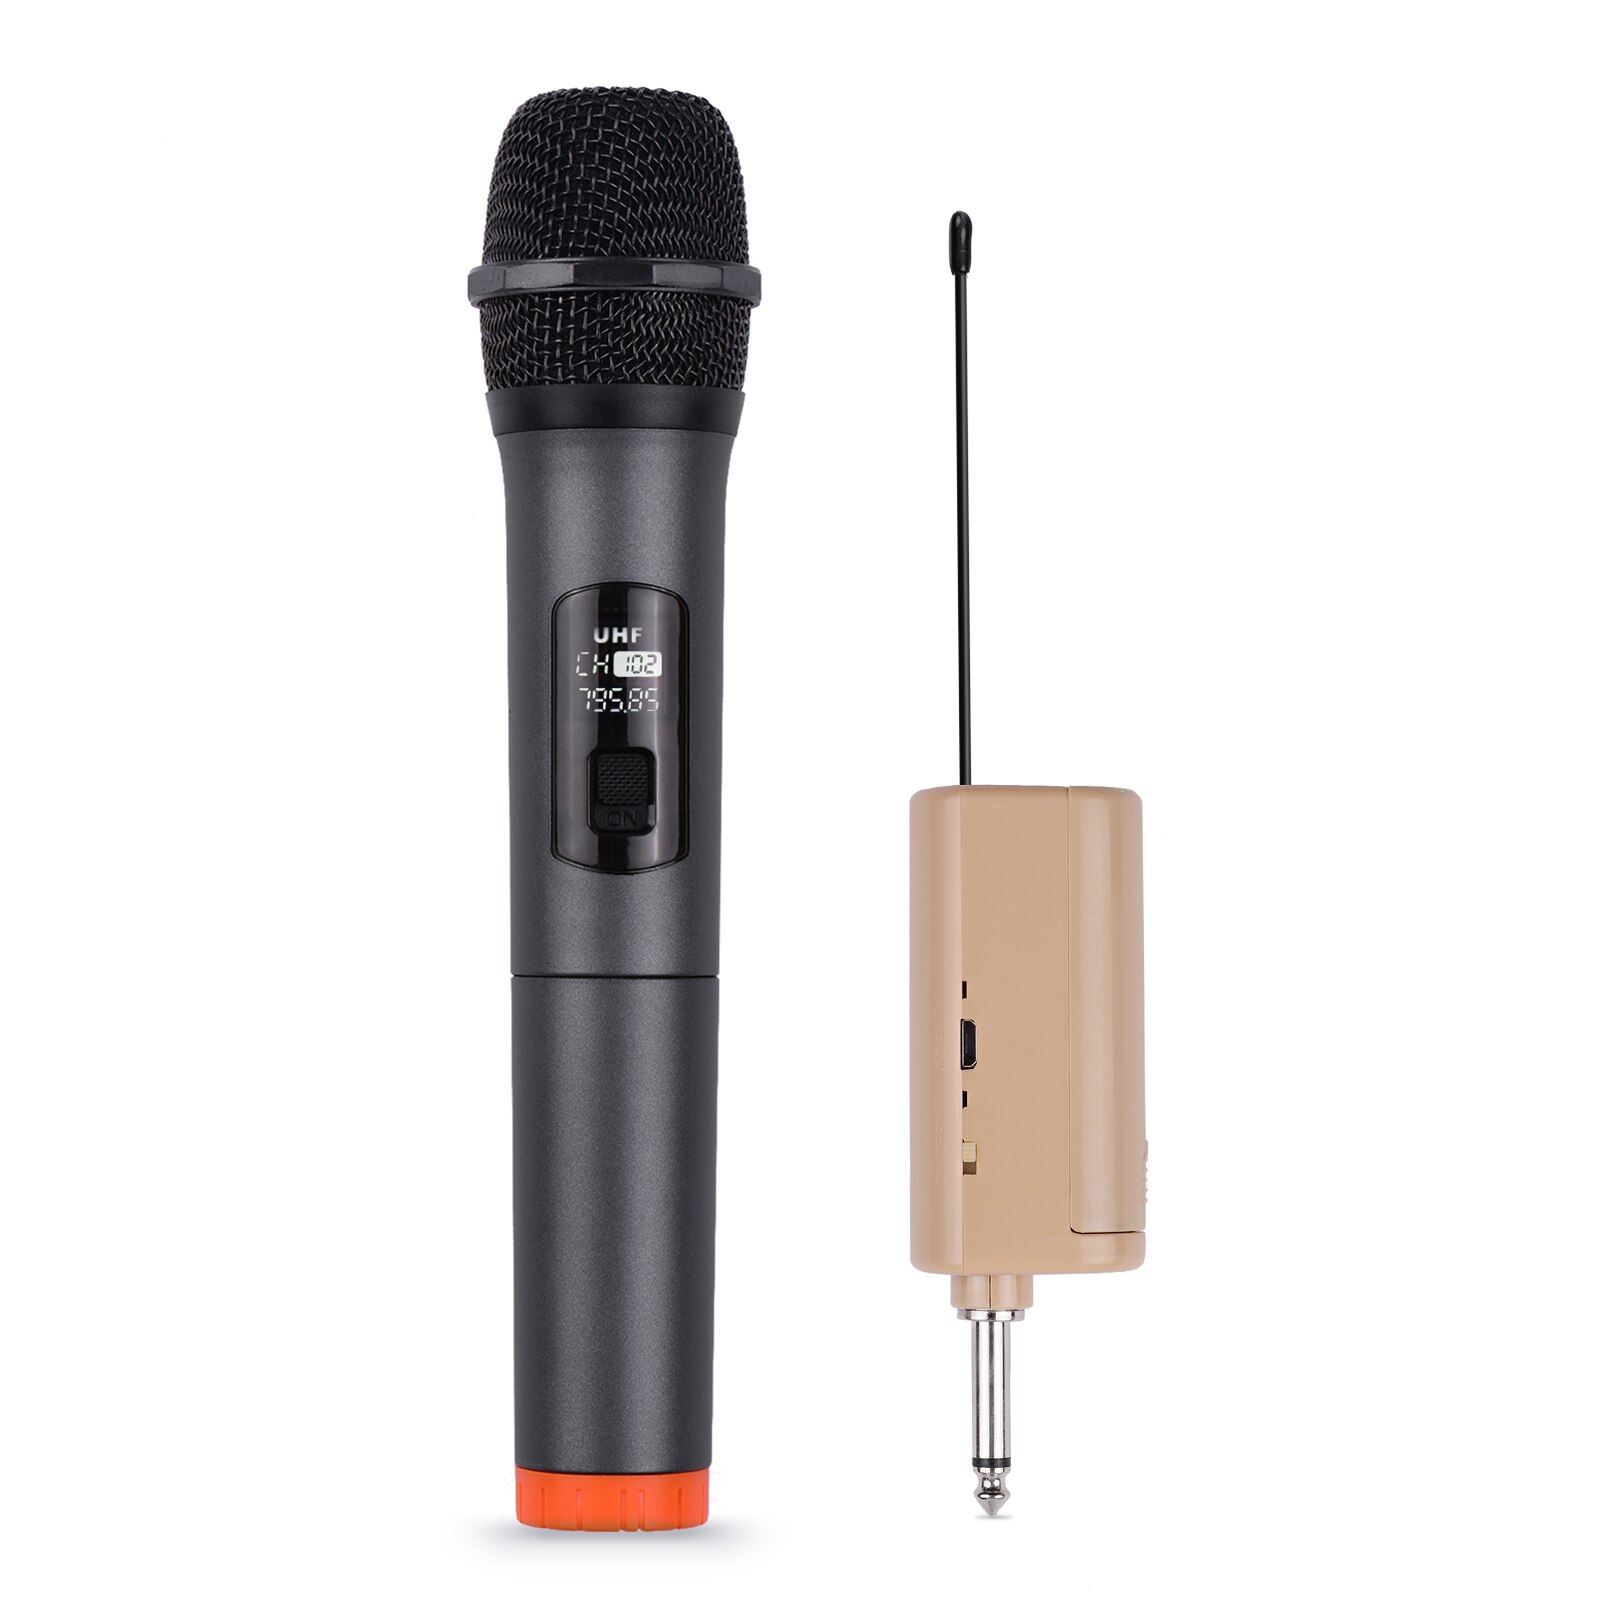 Handheld Draadloze Microfoon Uhf Dynamic Mic Draagbare Mini Ontvanger 6.35Mm Plug Voor Karaoke Toespraak Vergadering Stage Performance